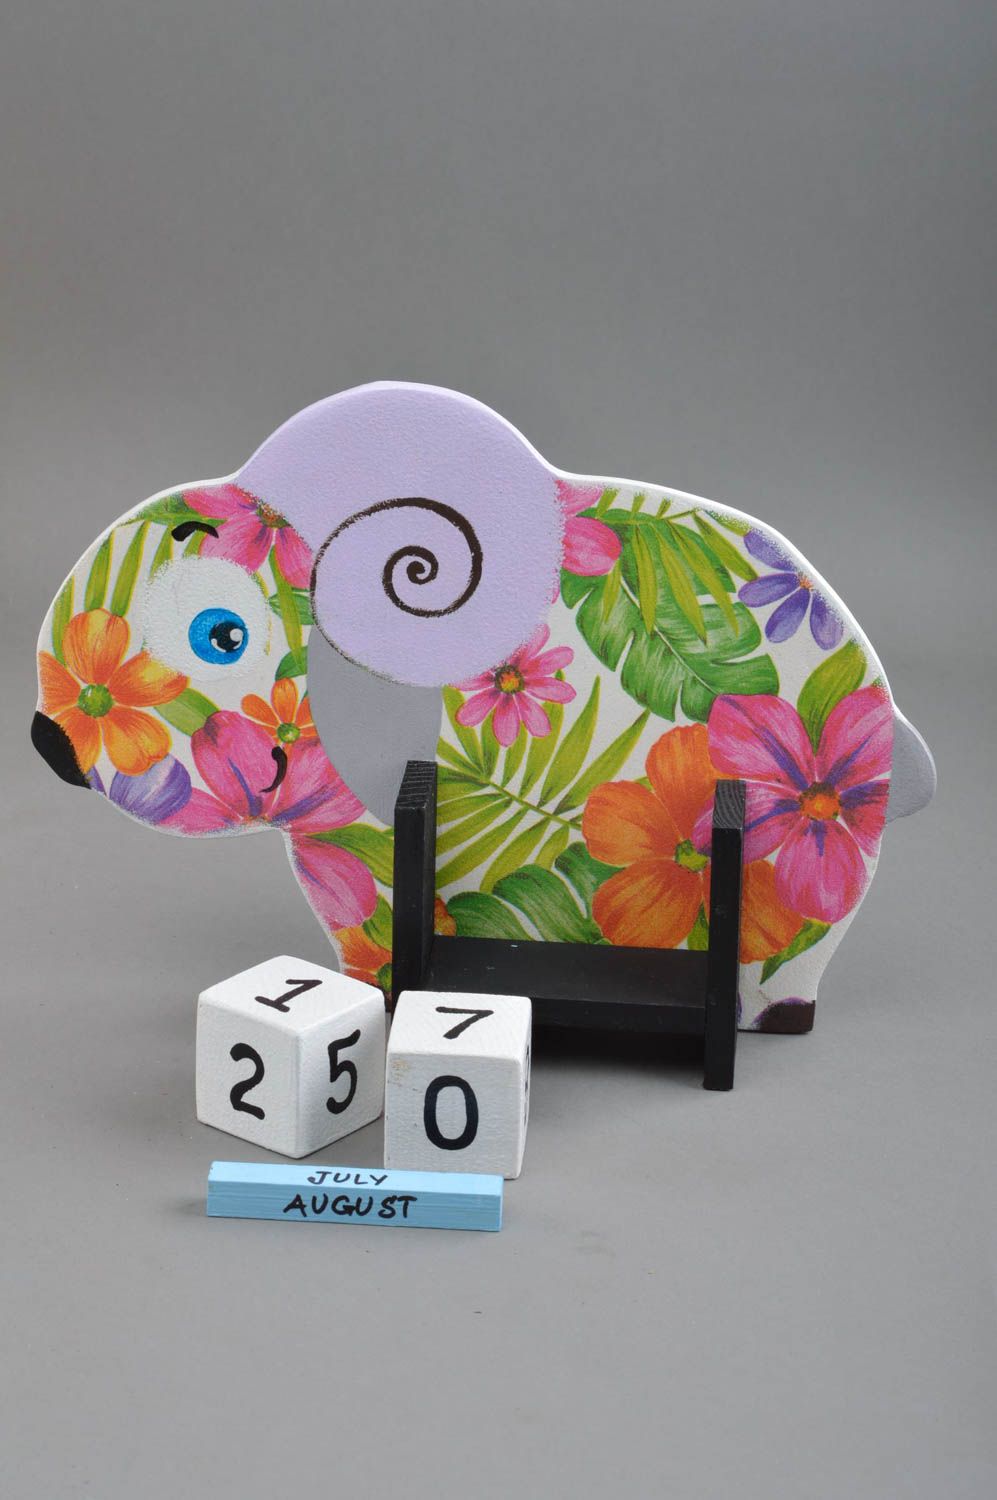 Детский календарь в виде барашка из фанеры декупаж в красивых цветах хэнд мэйд фото 3